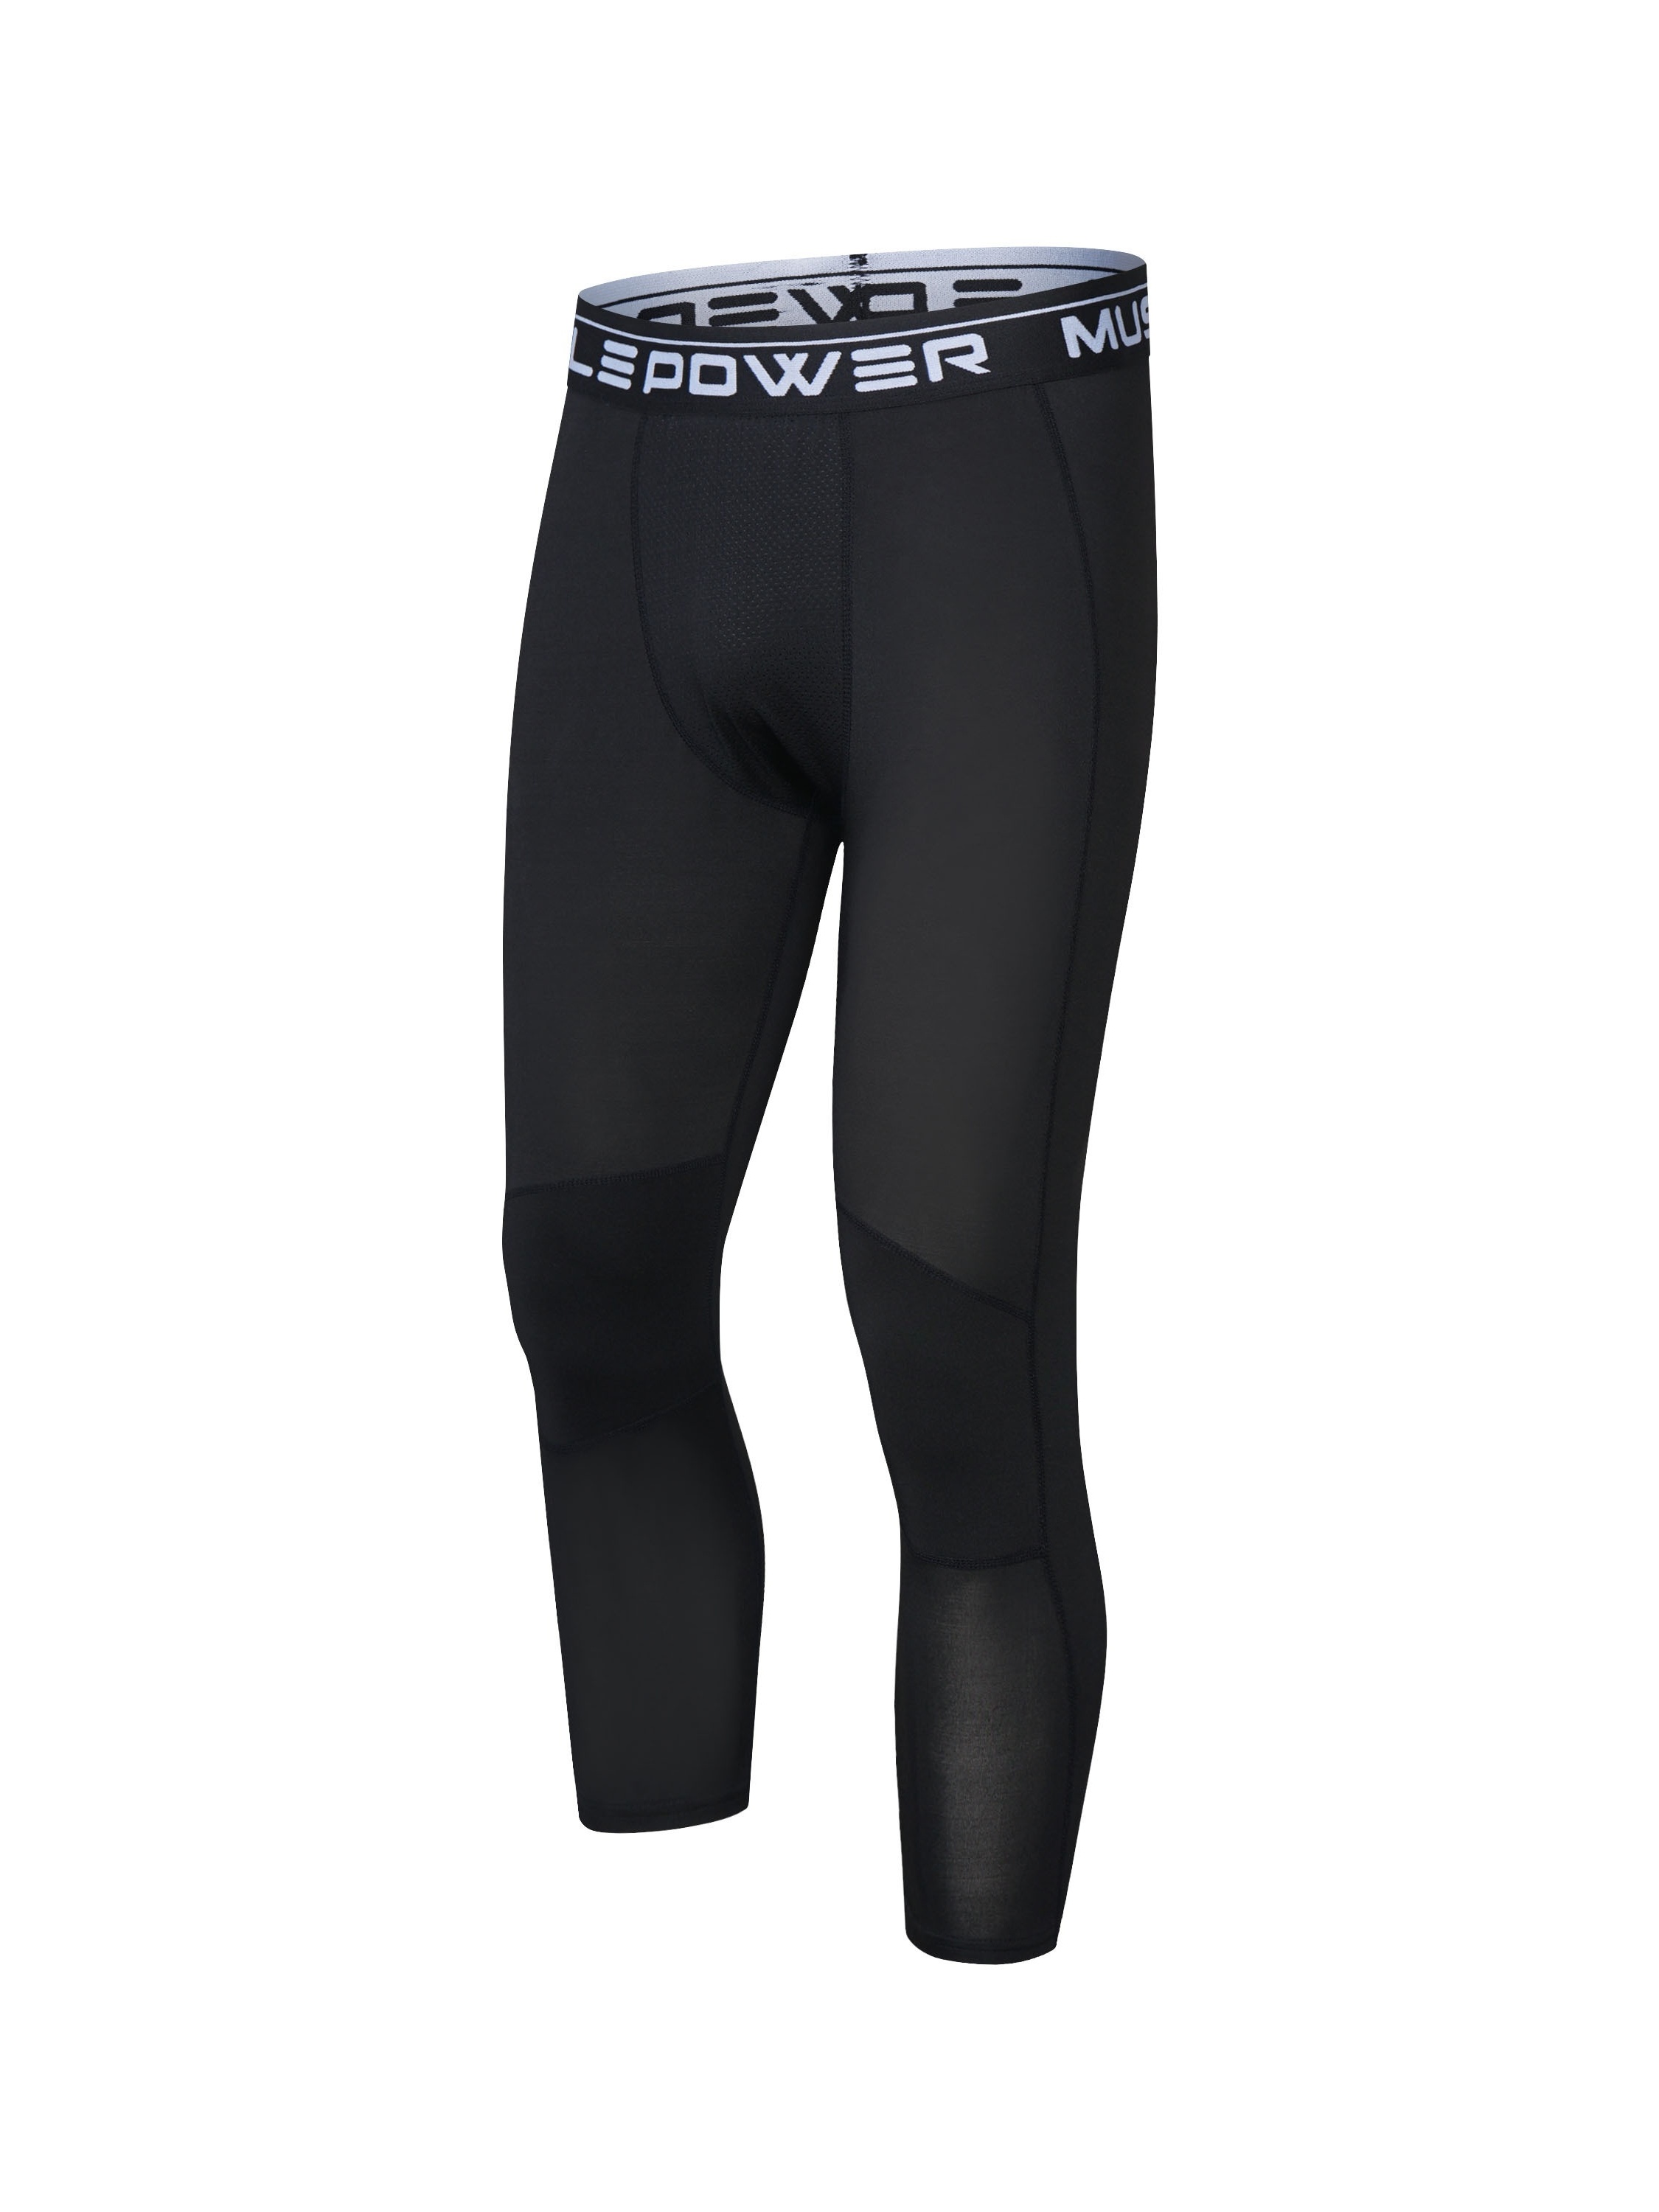 Affordable Wholesale capri pants men running legging For Trendsetting Looks  